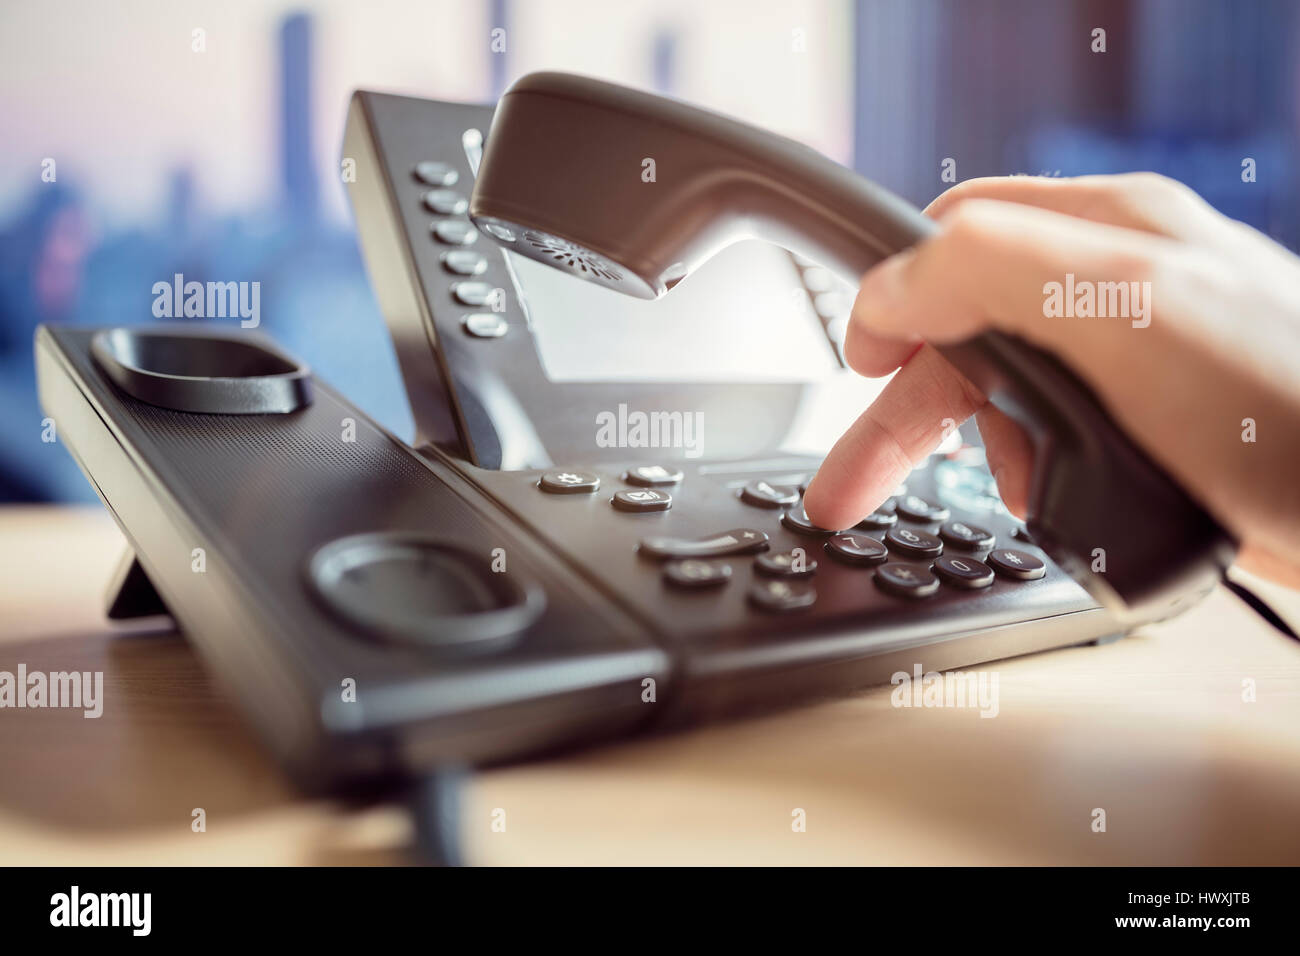 Clavier téléphonique composition concept pour la communication, contactez-nous et le service clientèle assistance Banque D'Images